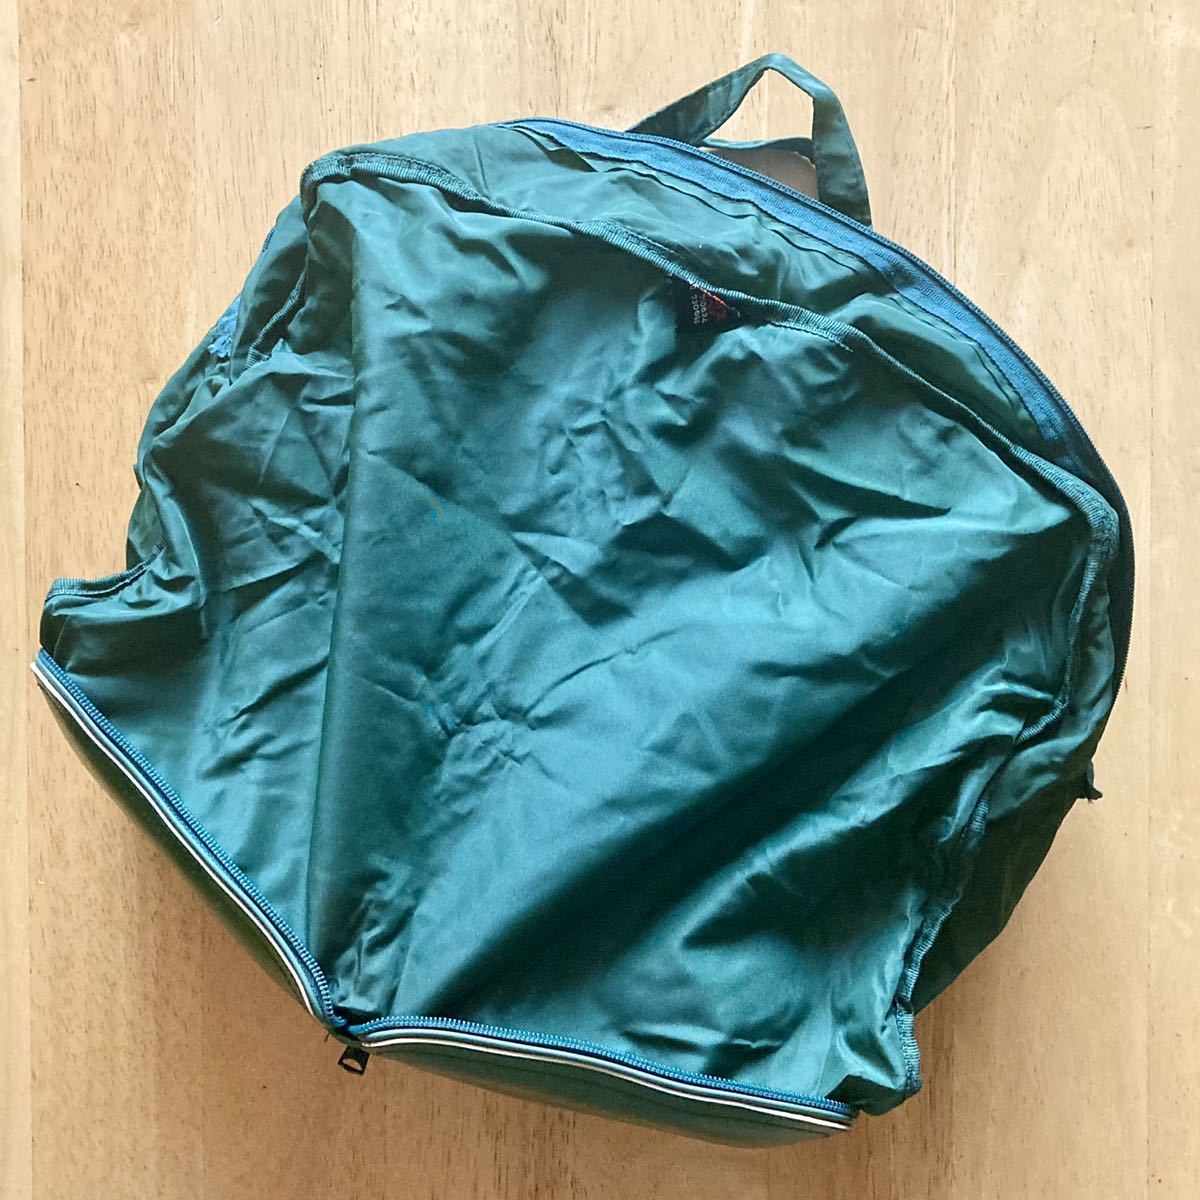  Showa Retro * сумка "Boston bag" * Toray * нейлон * портативный Magic * складной * легкий * эко-сумка * дорожная сумка зеленый * б/у 